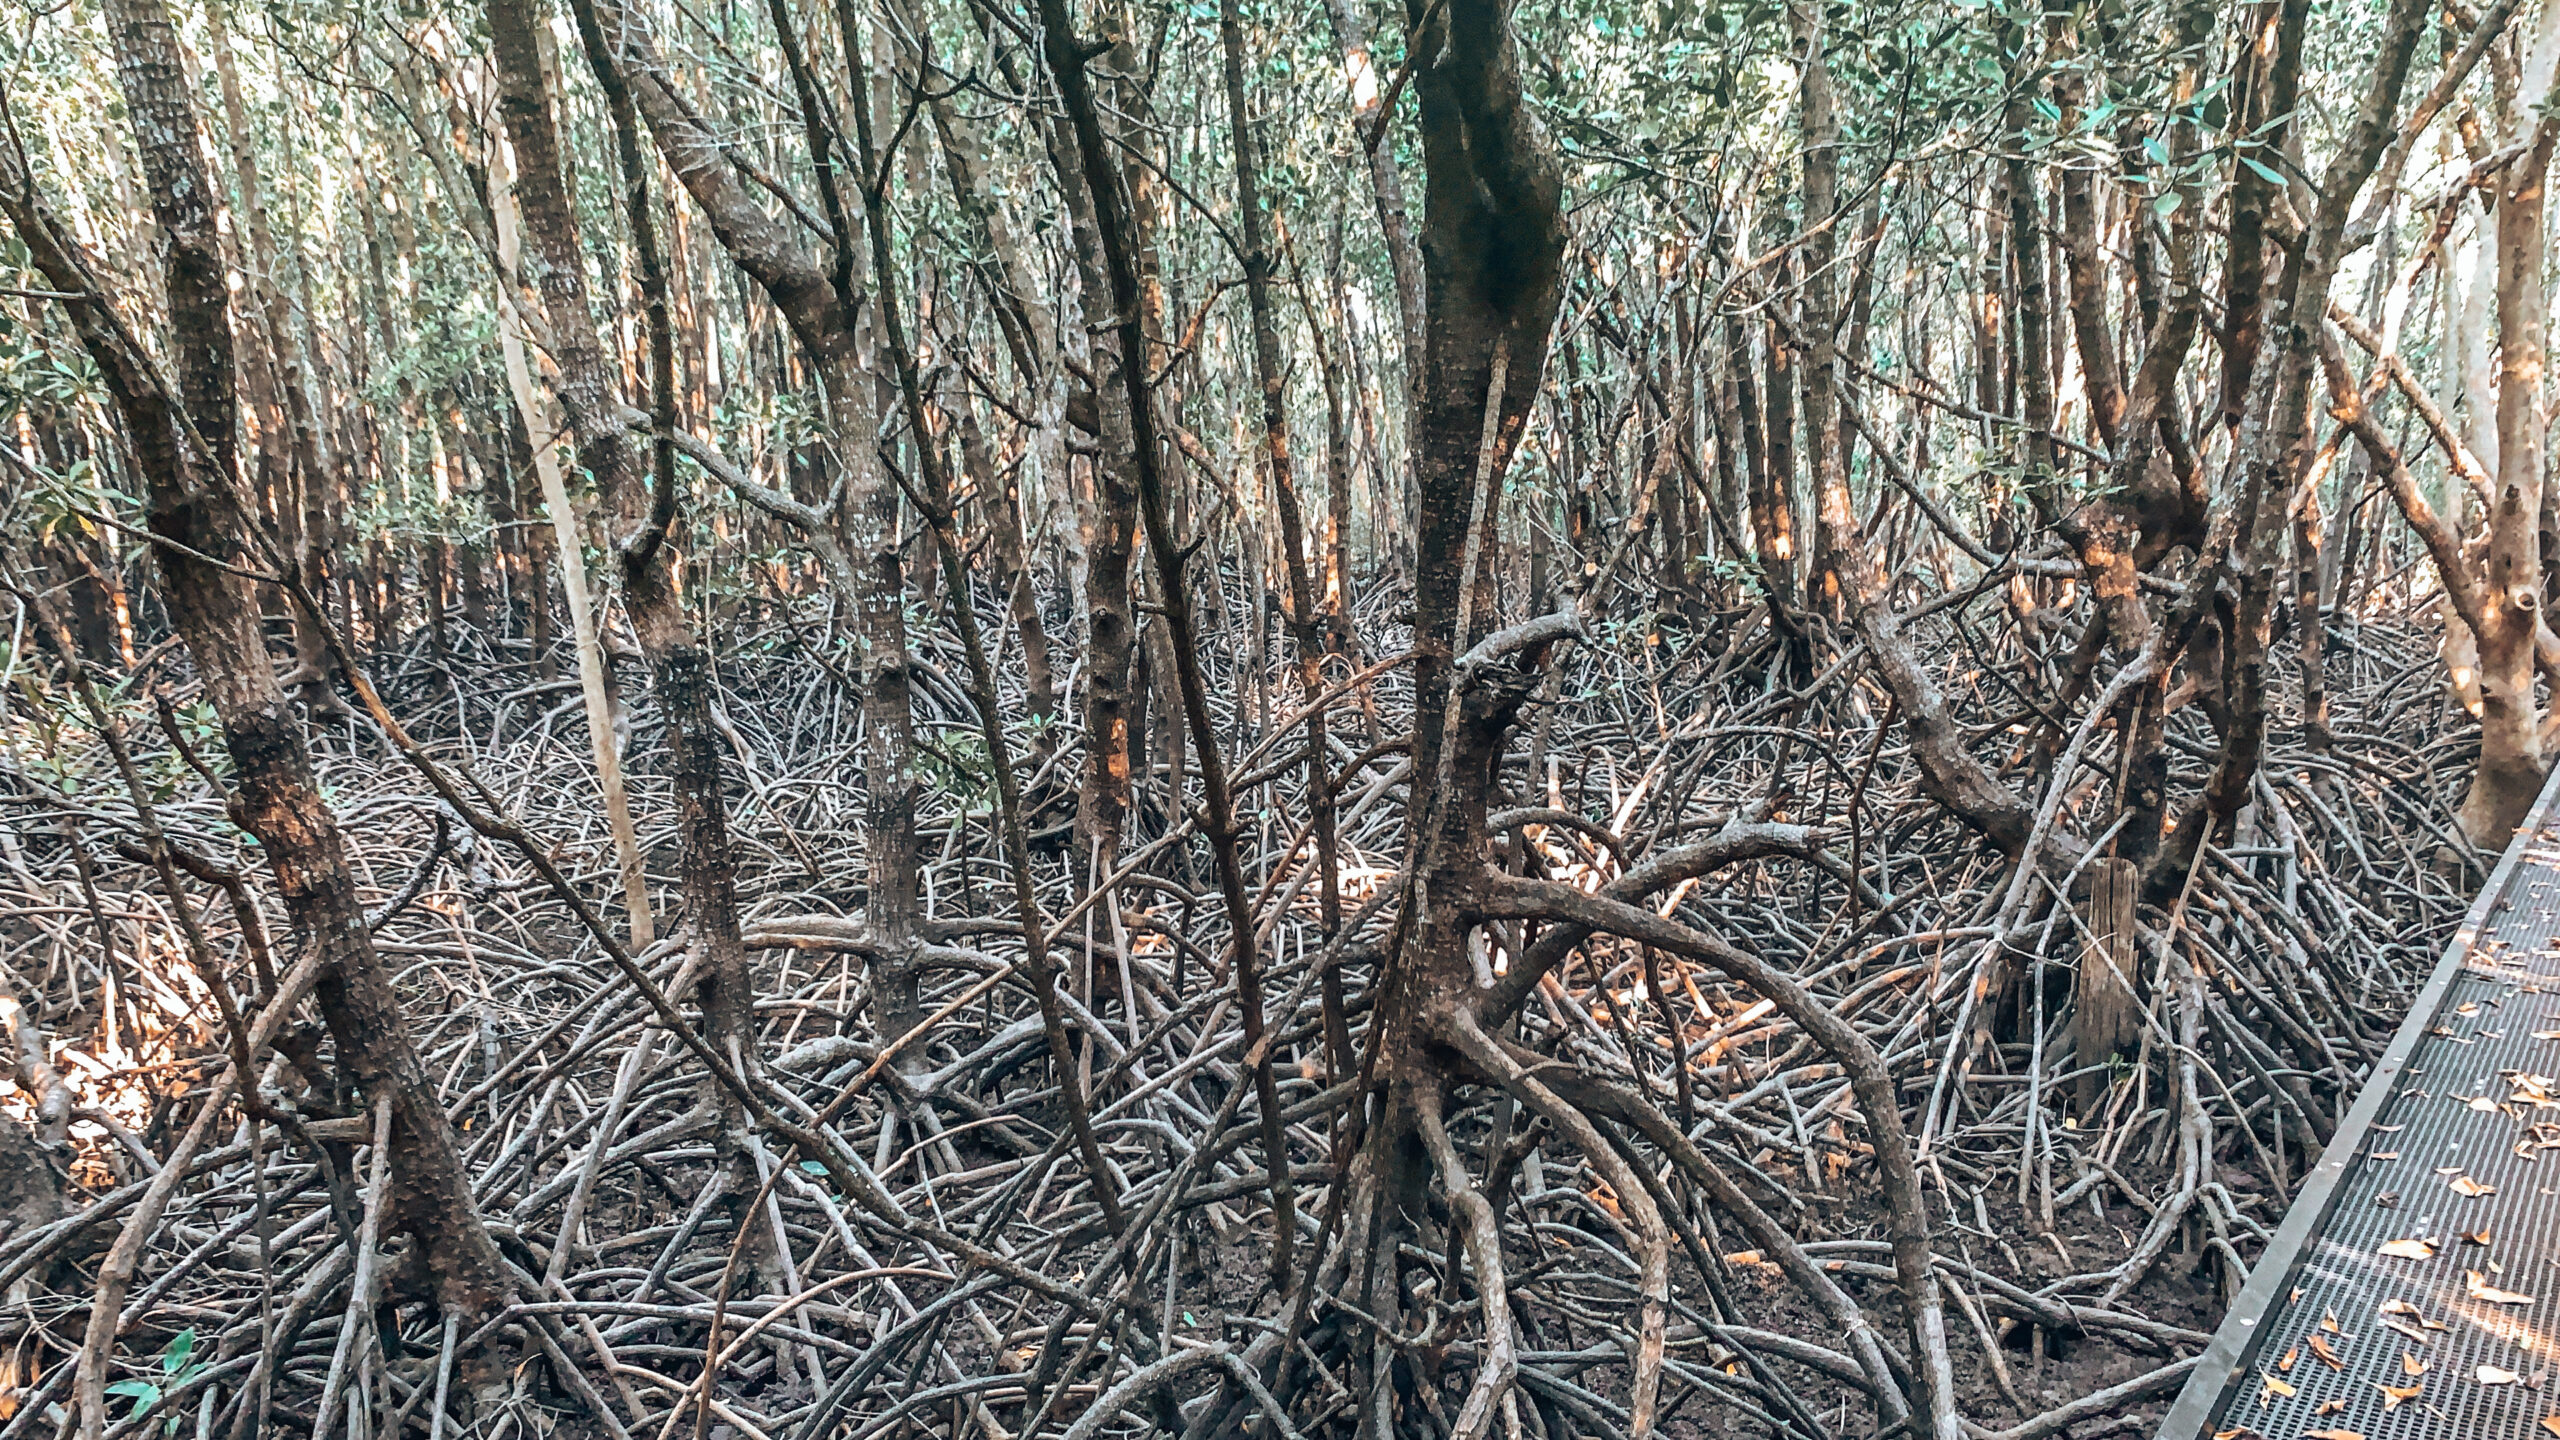 Darwin - Image of visible mangroves along a boardwalk